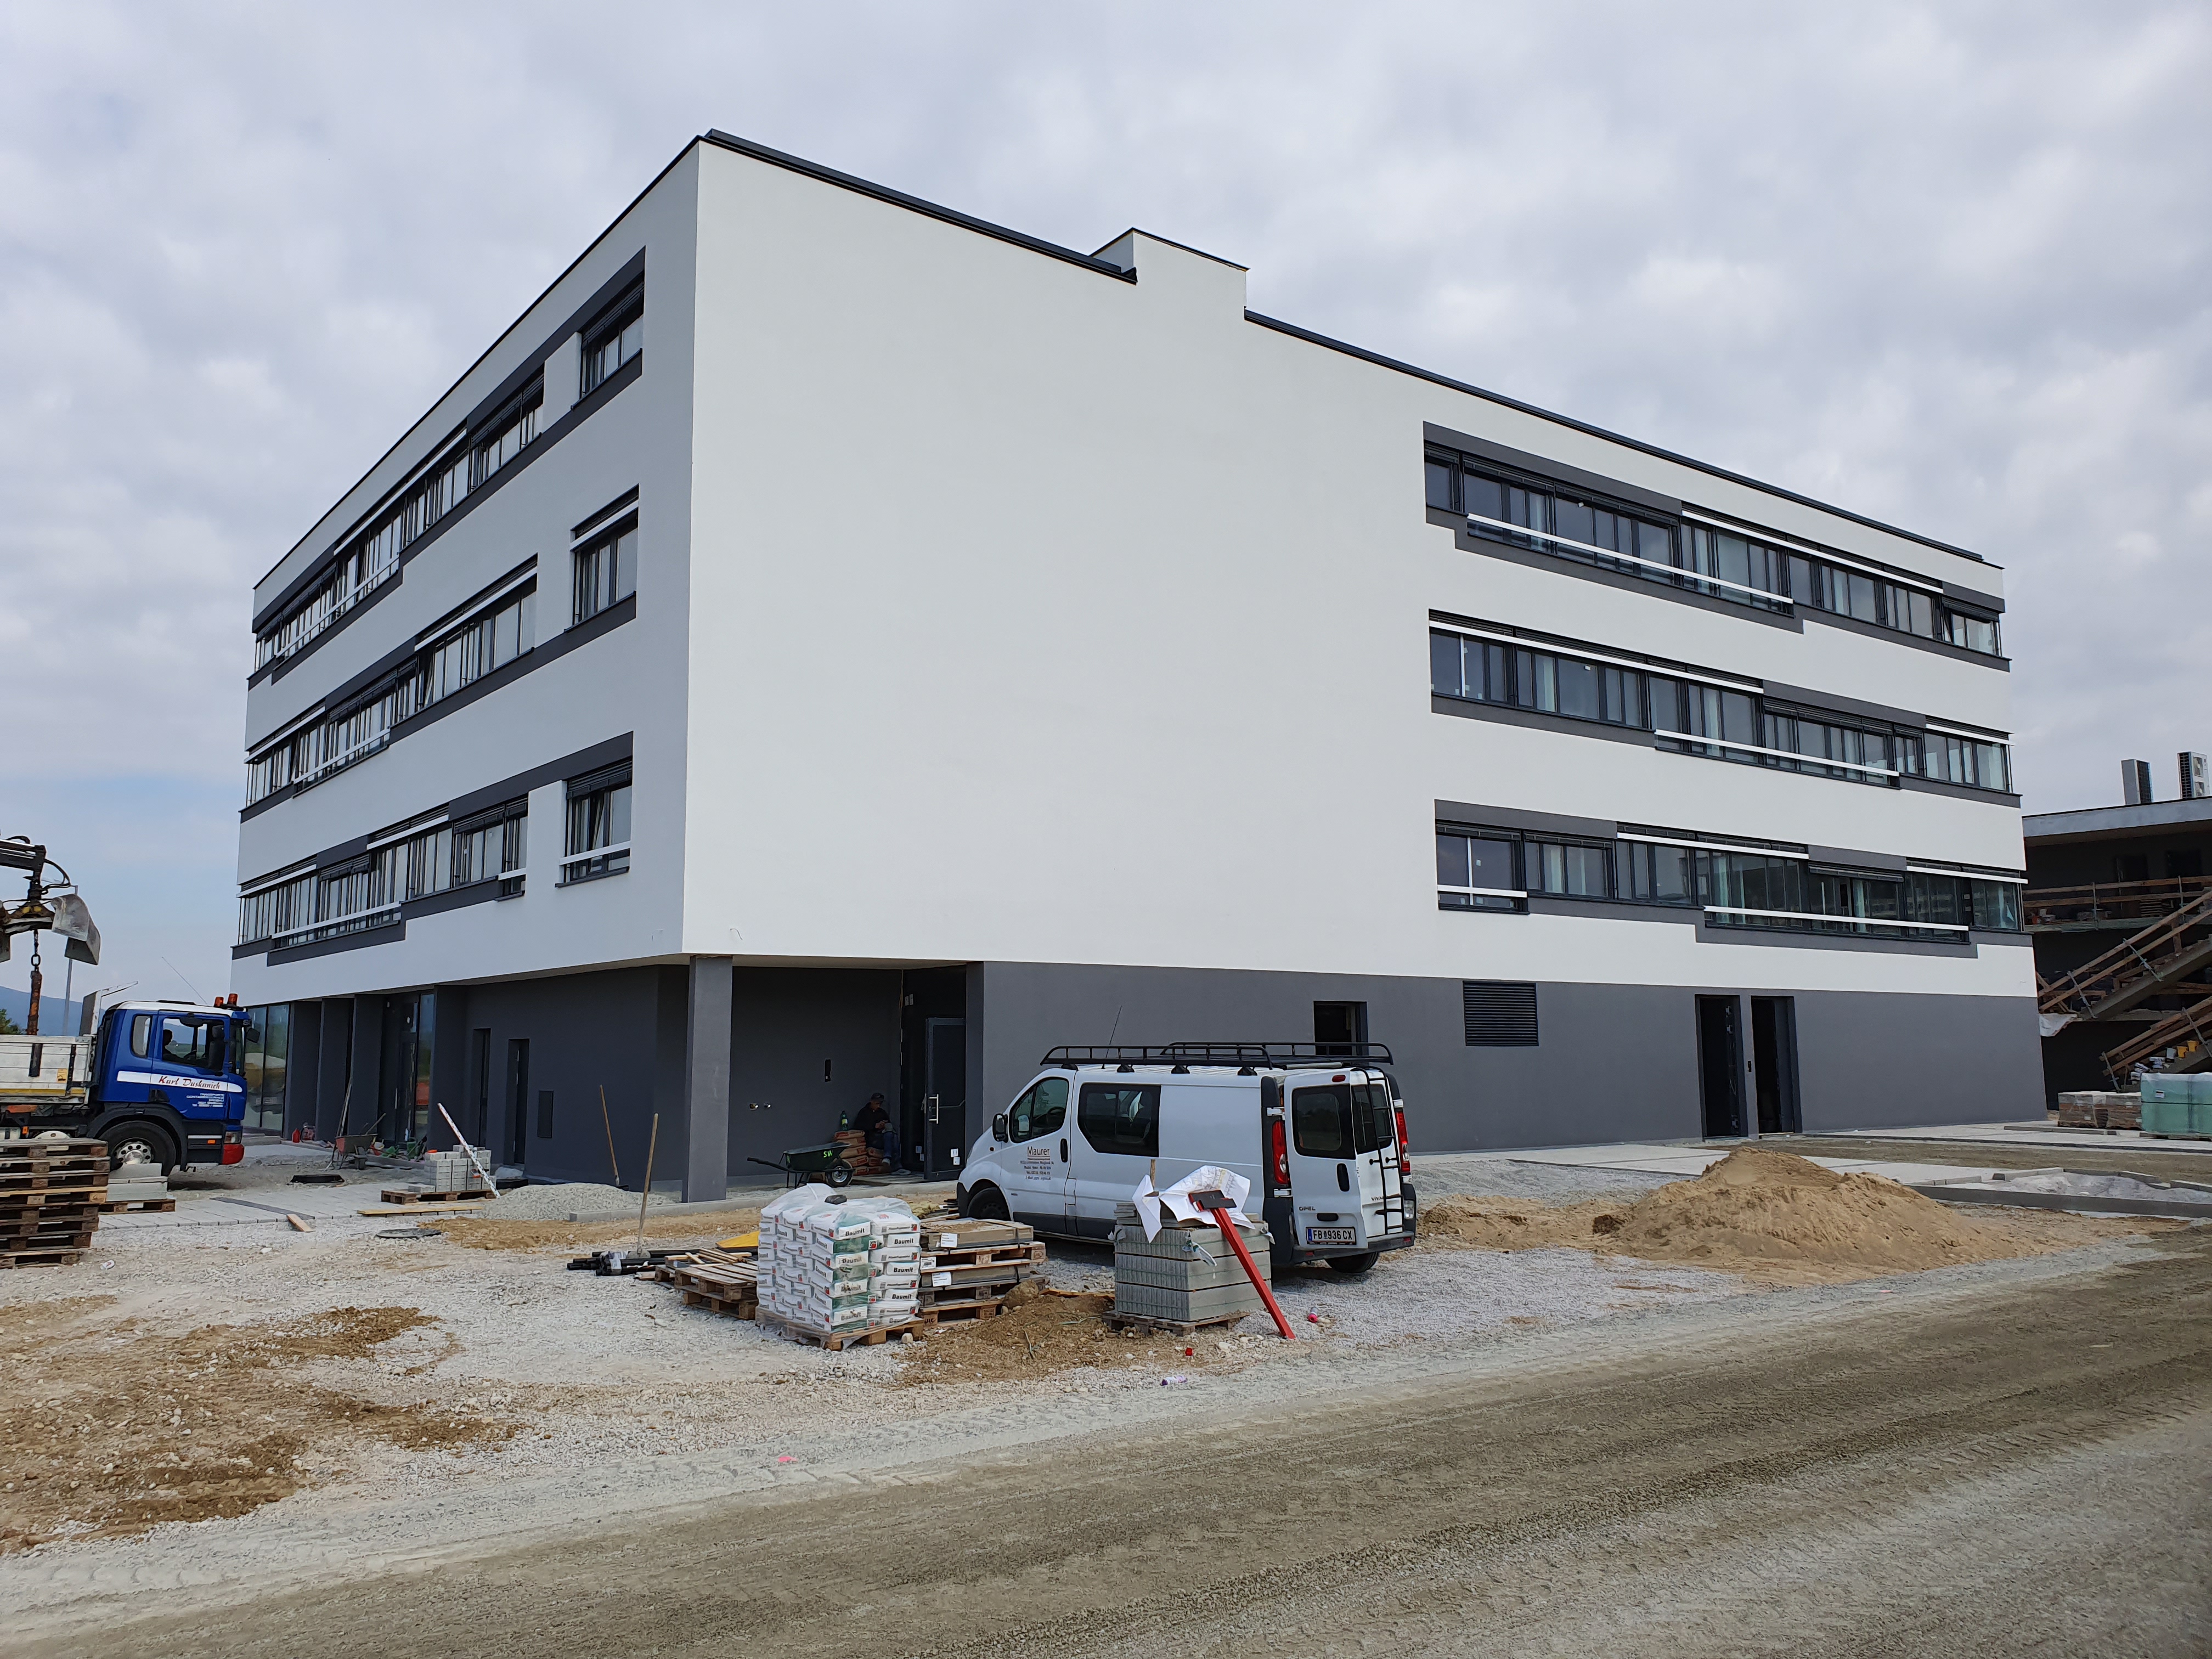 Bürogebäude, Office Base, Bad Vöslau - Budownictwo lądowe naziemne